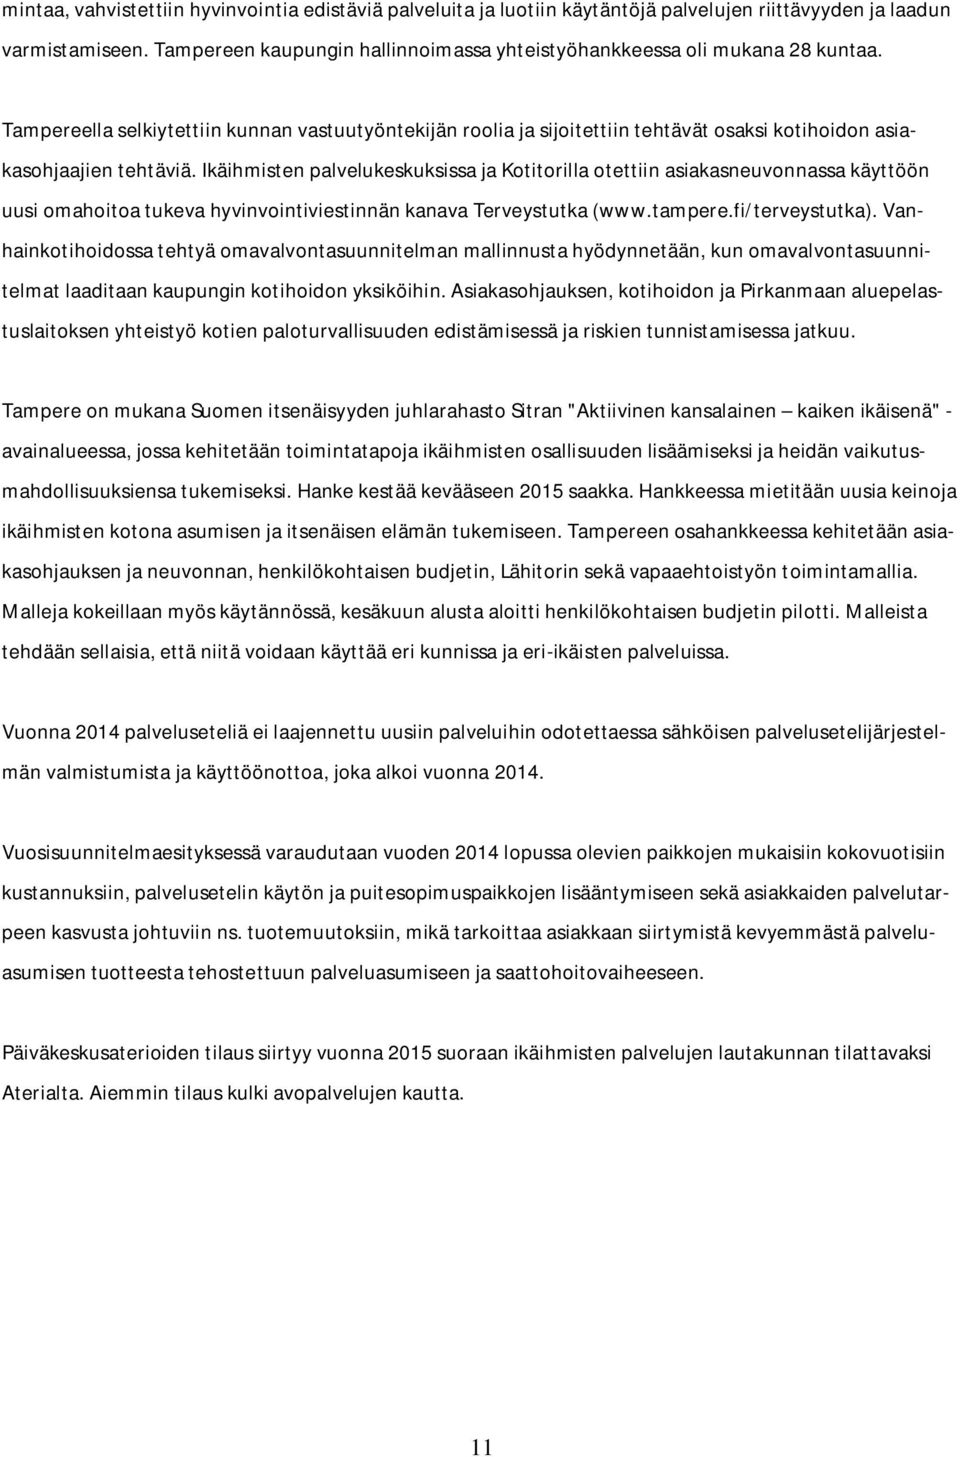 Tampereella selkiytettiin kunnan vastuutyöntekijän roolia ja sijoitettiin tehtävät osaksi kotihoidon asiakasohjaajien tehtäviä.